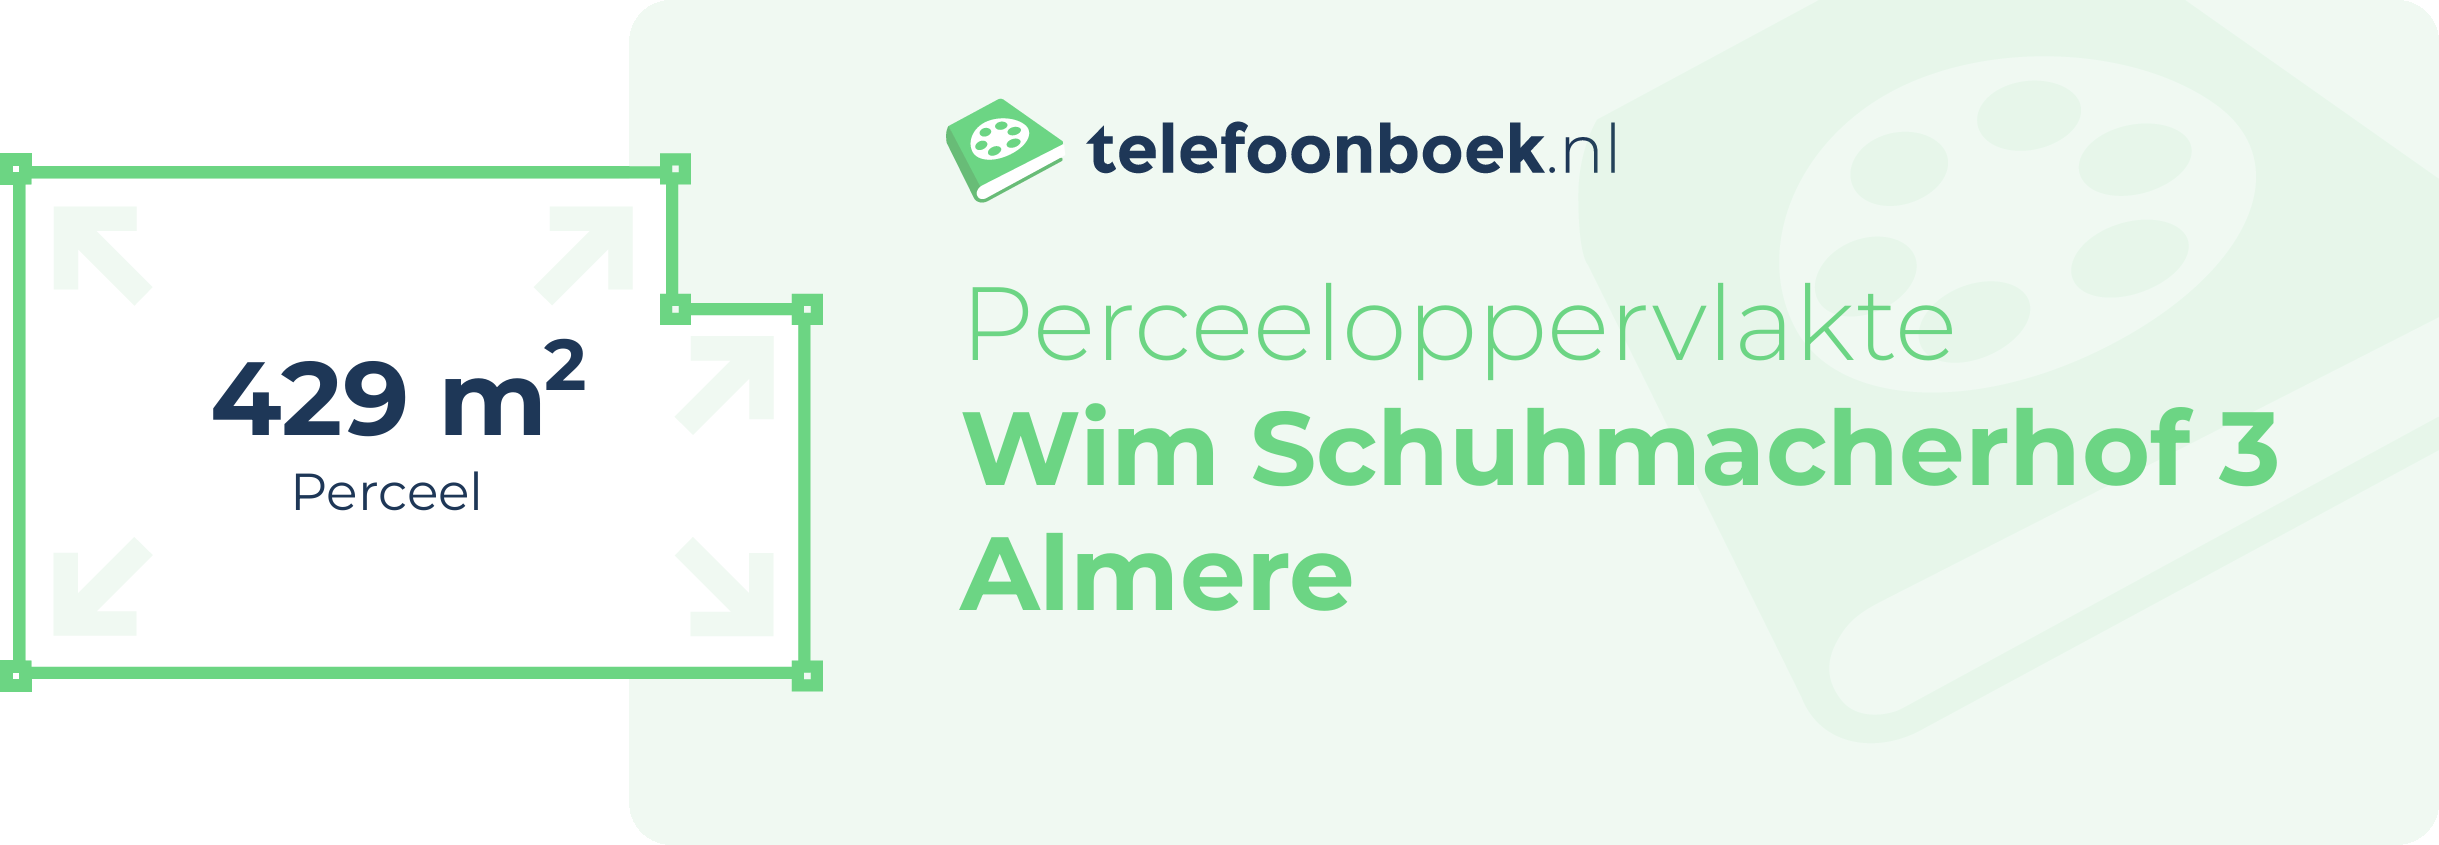 Perceeloppervlakte Wim Schuhmacherhof 3 Almere